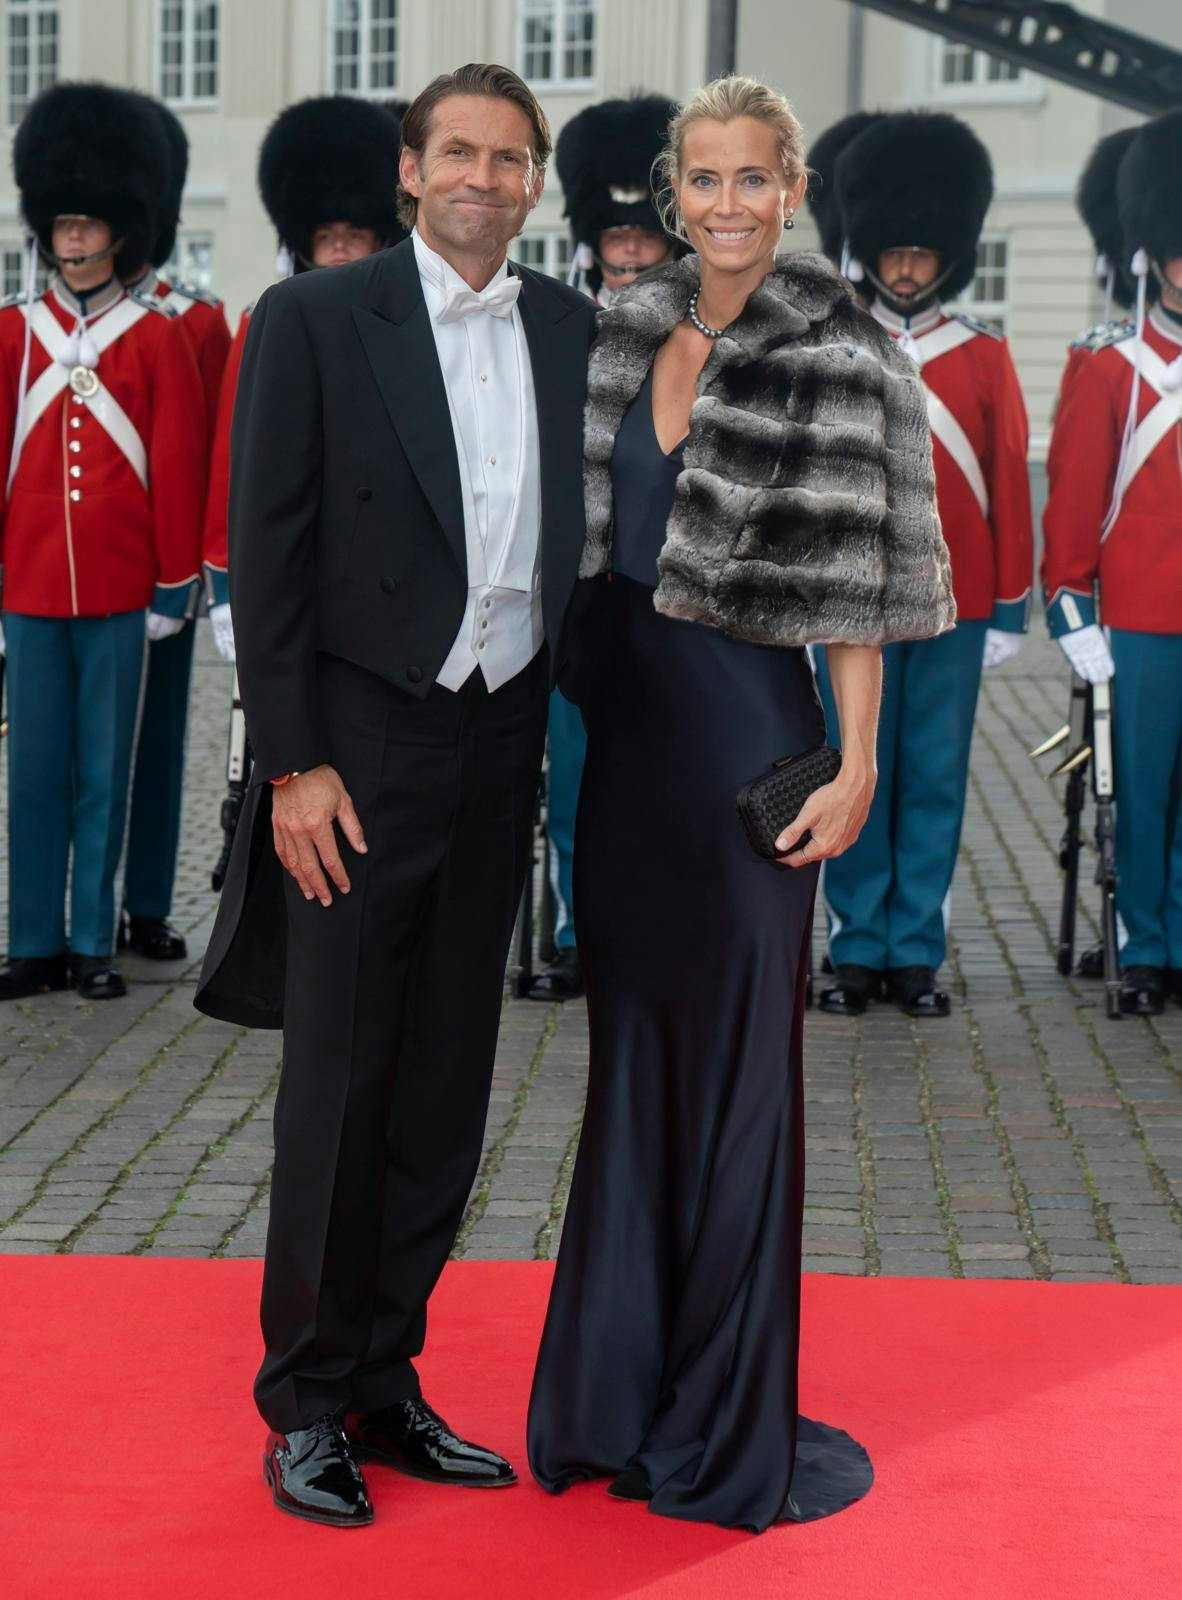 Forholdet mellem Jimmy Maymann-Holler og Christine Pram Kjølbye er så officielt, at parret sidste år var gæster til en af dronning Margrethes store fester.